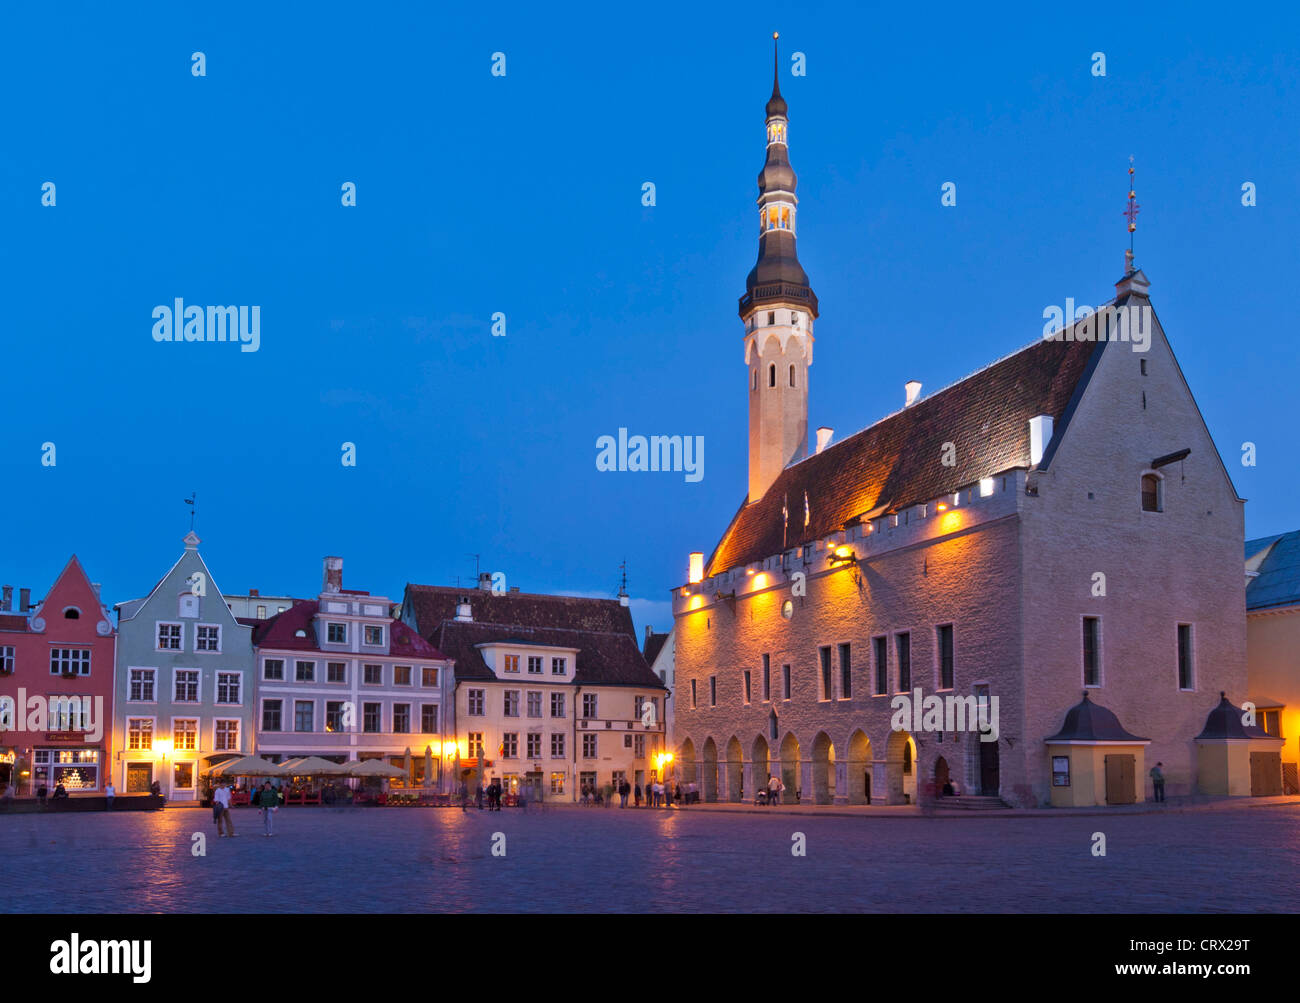 Place de la vieille ville médiévale de Tallinn raekoja plats la nuit Estonie Etats baltes Banque D'Images